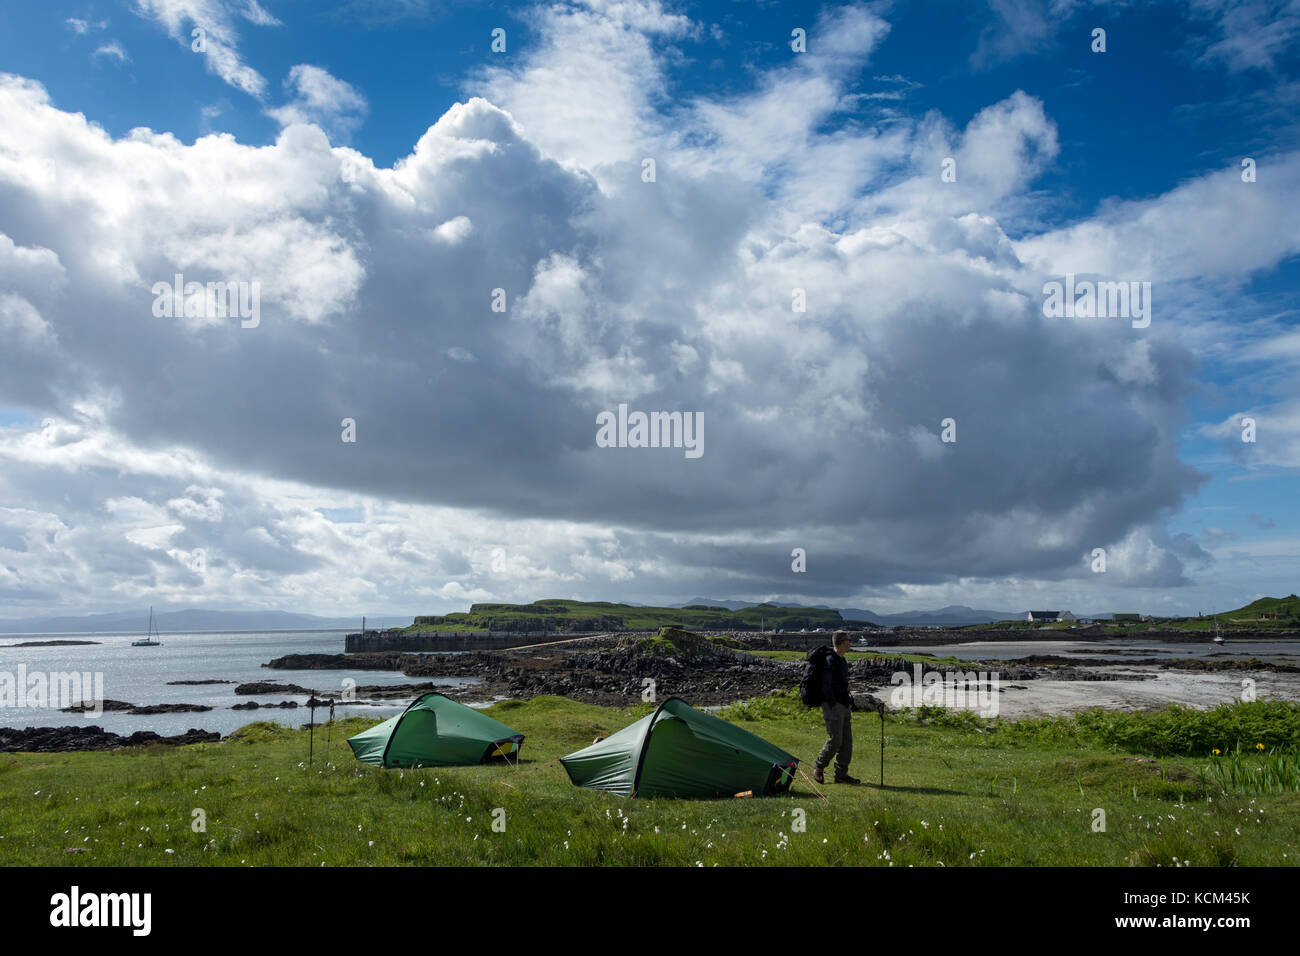 Zwei kleine Hilleberg Akto zelten auf dem Campingplatz in Galmisdale Bay auf der Isle of Eigg, Schottland, UK Stockfoto